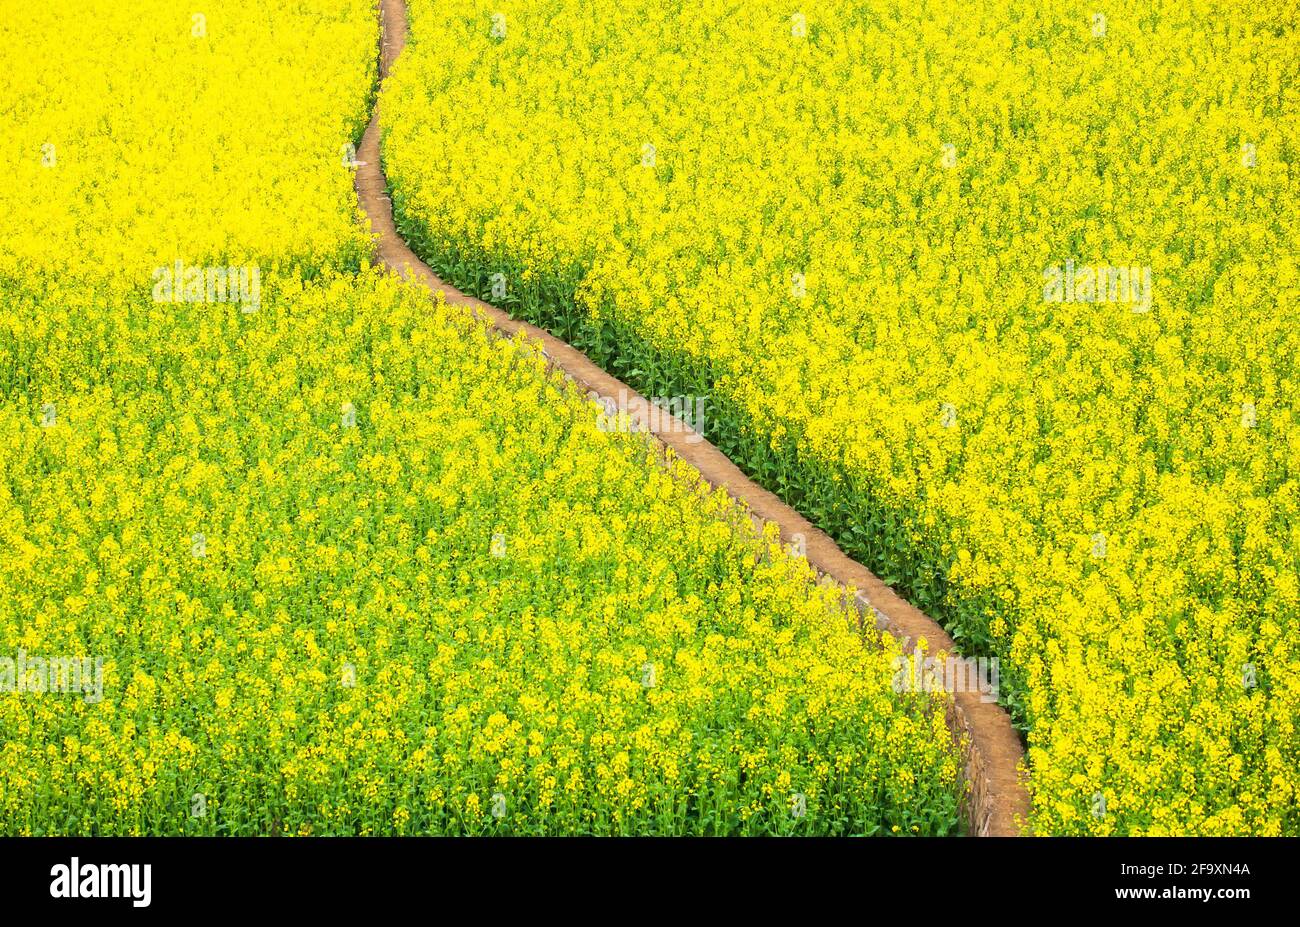 Luftaufnahme Feldweg in gelben Senf Blumen Feld, blühenden Senf im Frühling. Land in Südchina. Stockfoto